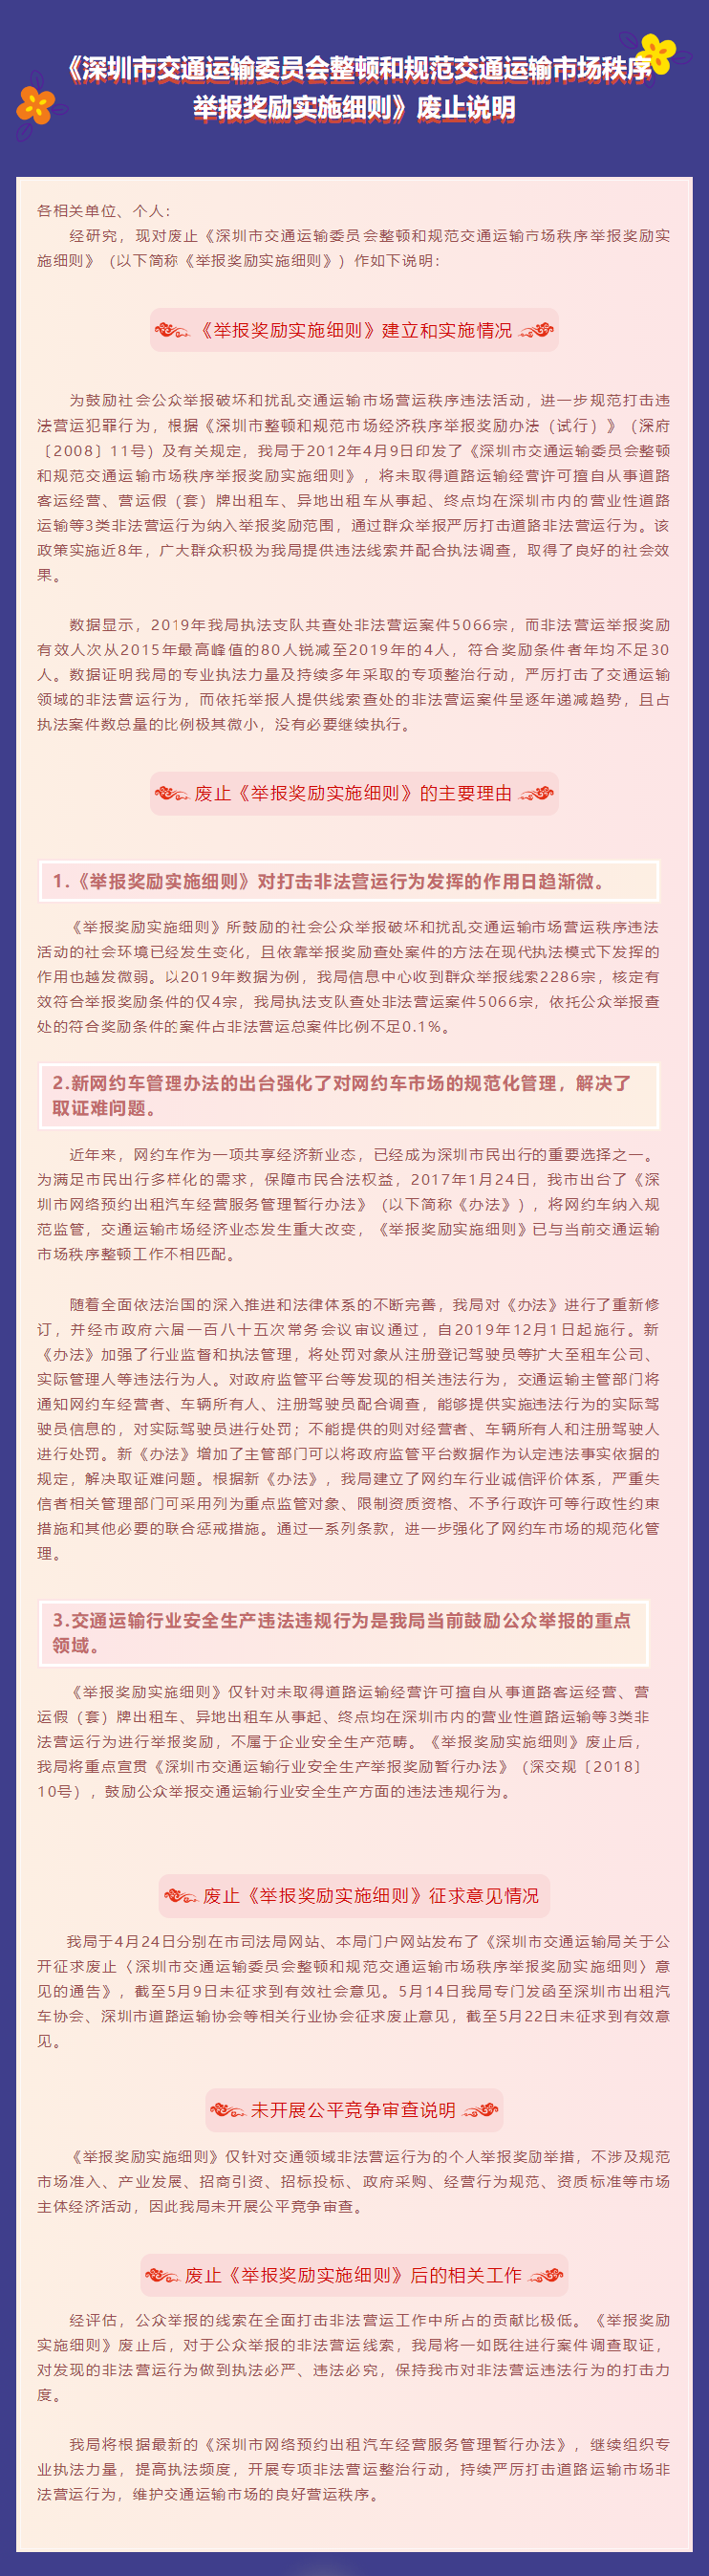 《深圳市交通运输委员会整顿和规范交通运输市场秩序举报奖励实施细则》废止说明.png